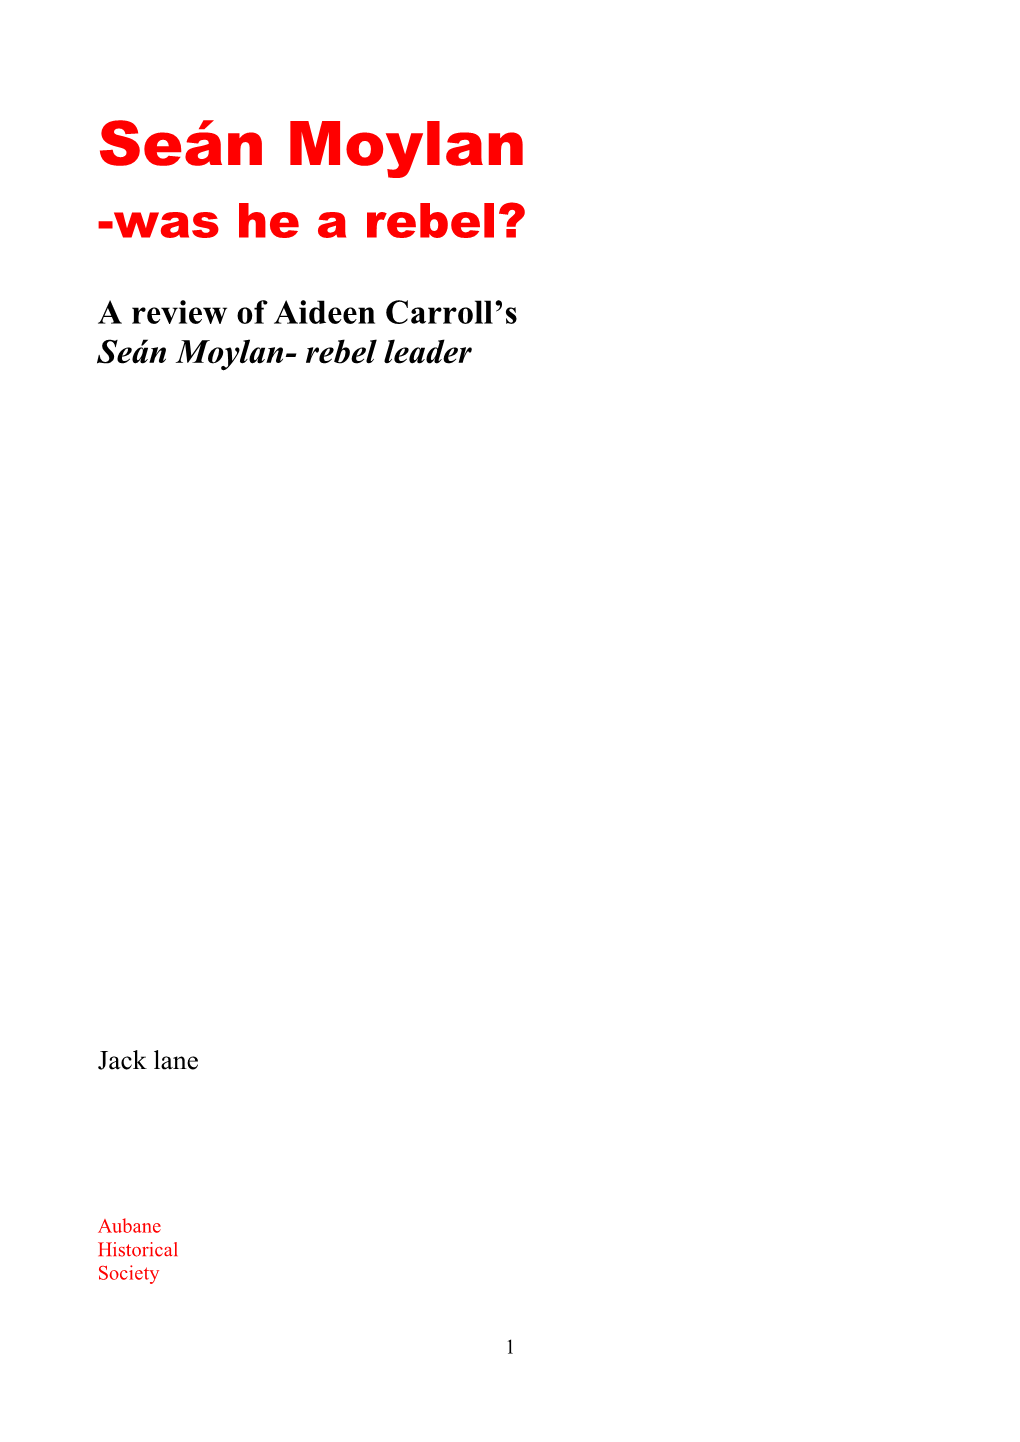 Seán Moylan -Was He a Rebel?